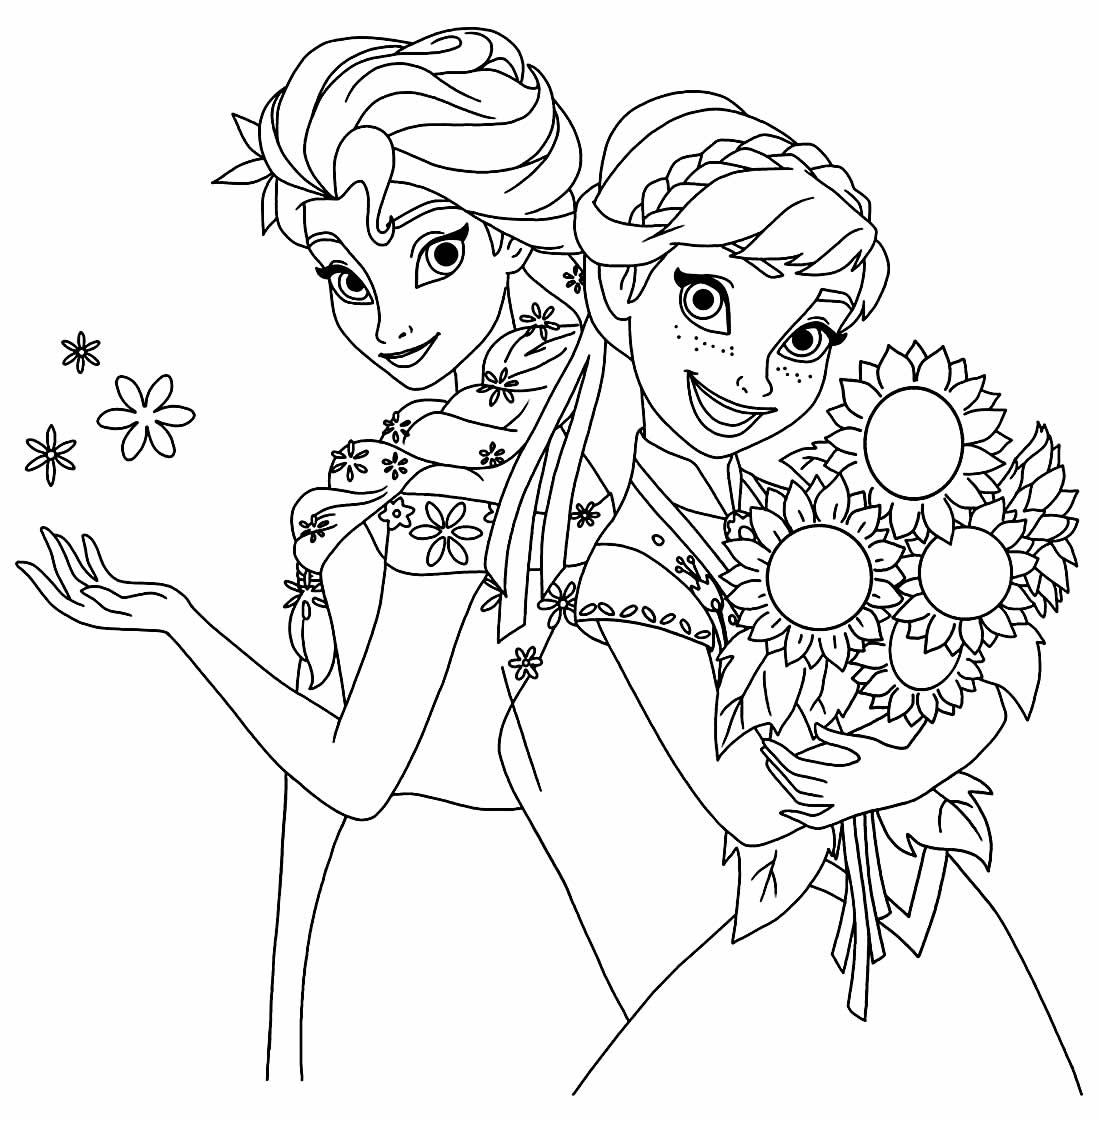 Desenho para colorir da Elsa - Frozen